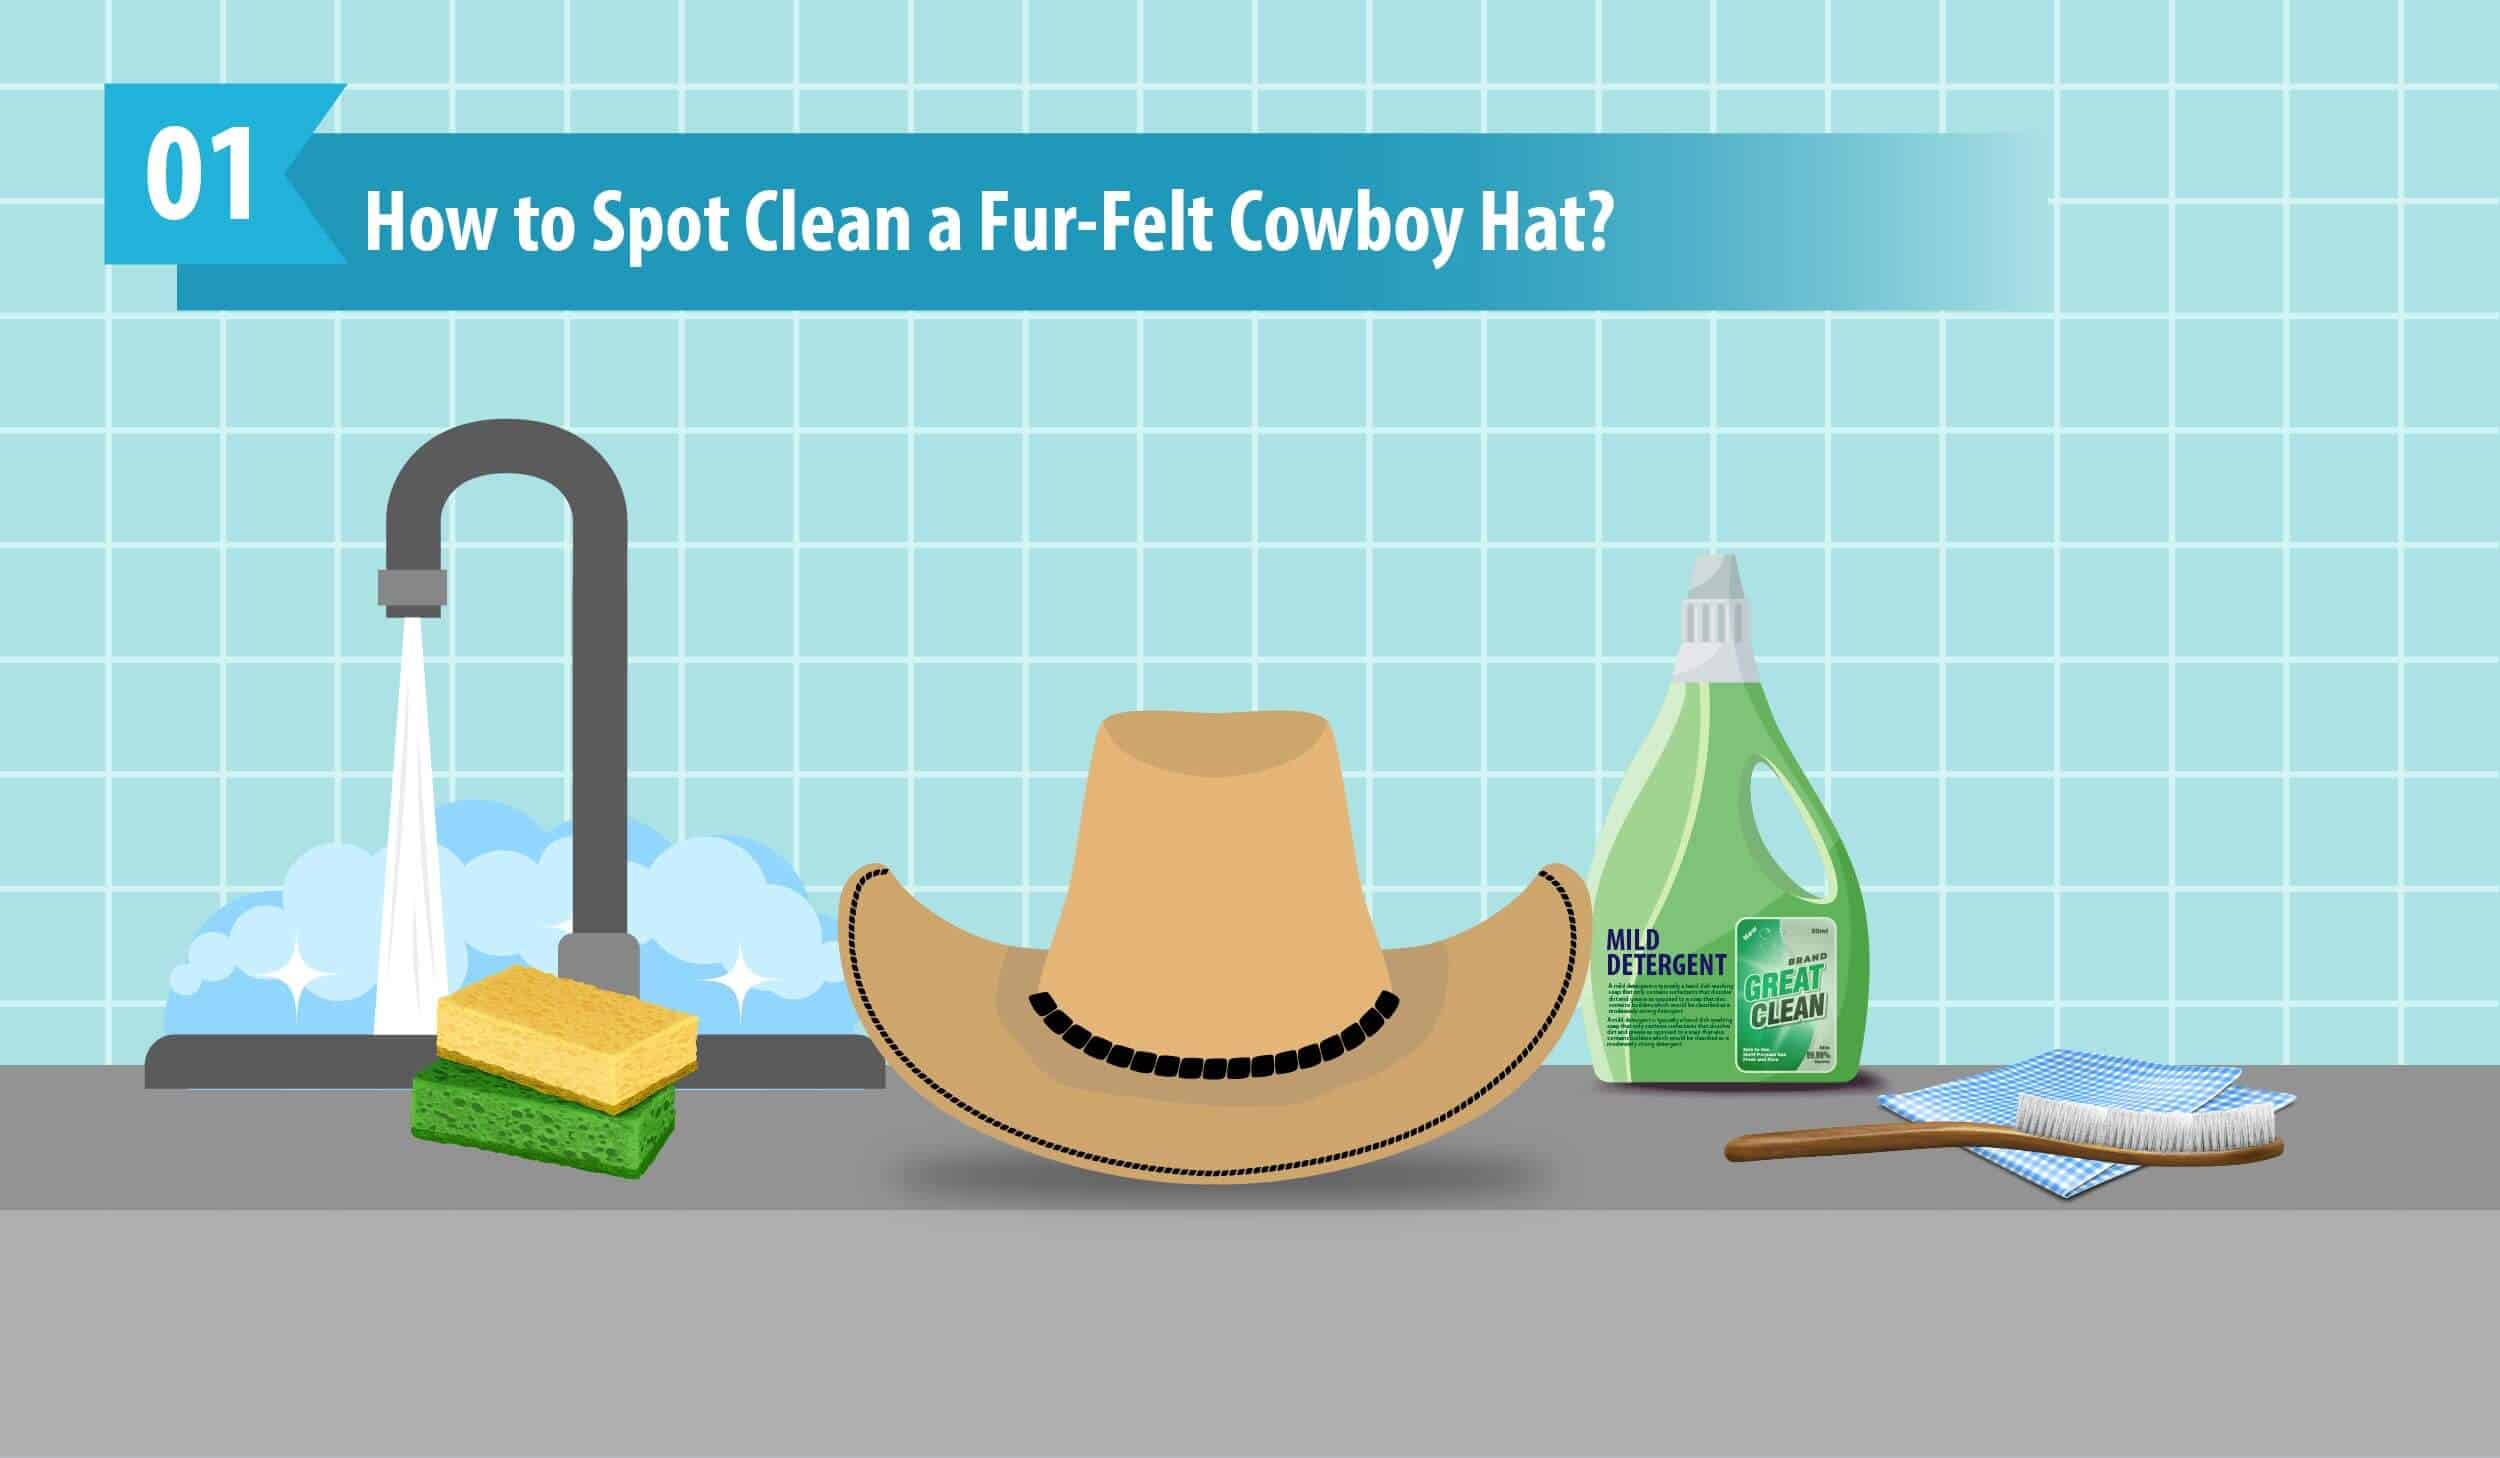 How to Spot Clean a Fur-Felt Cowboy Hat